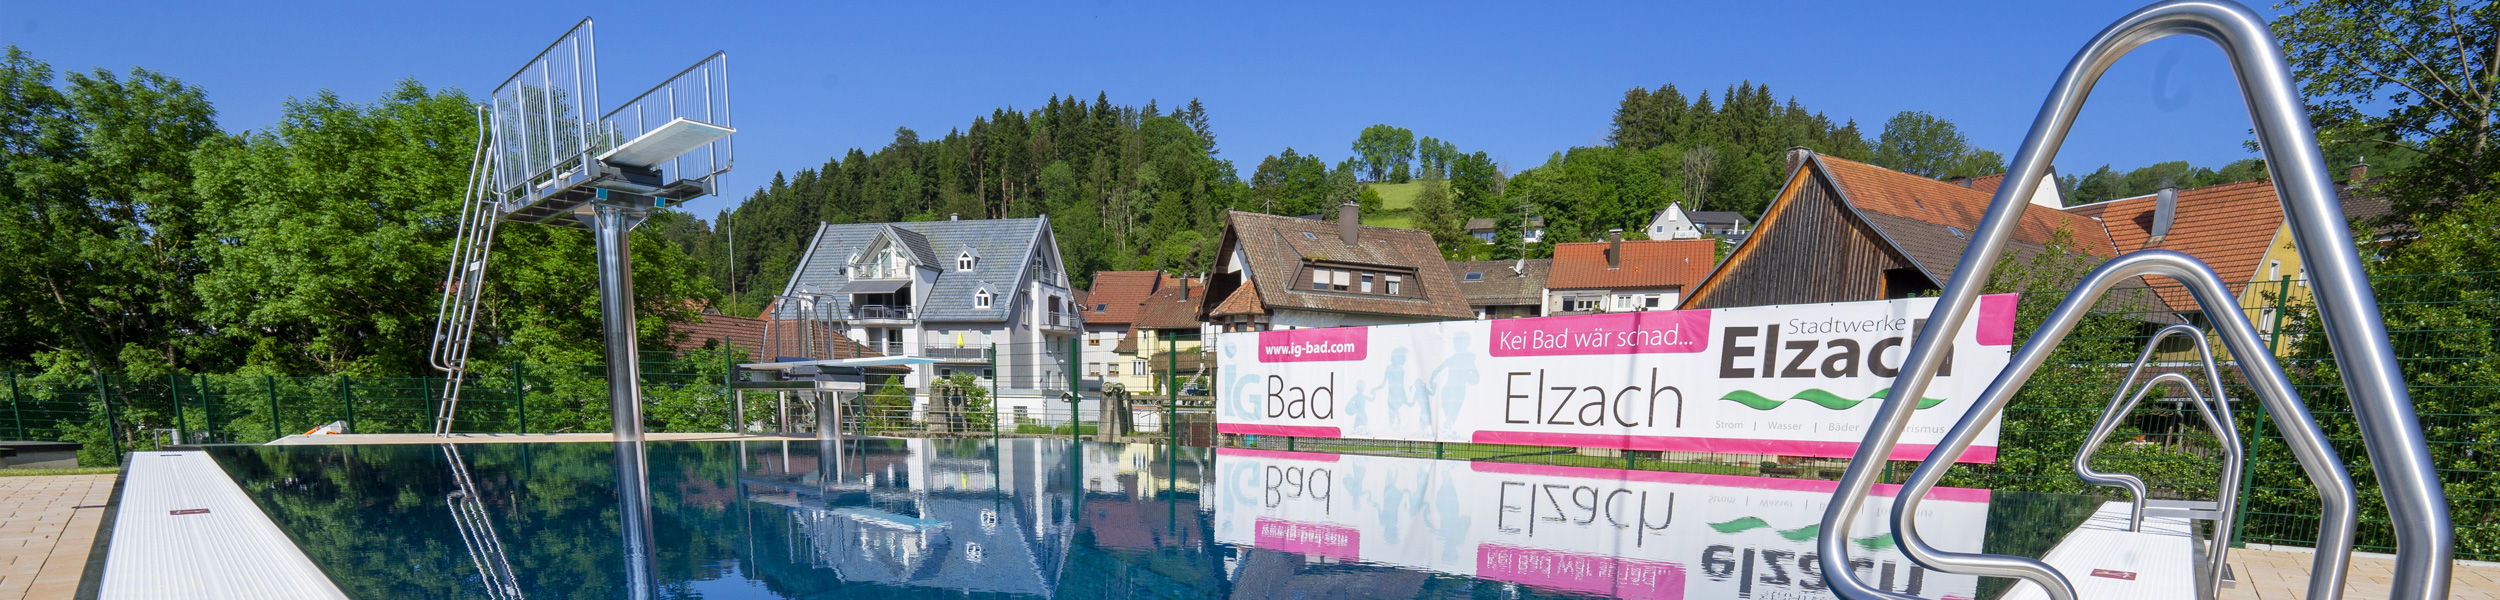 Stadtwerke Elzach und IG Bad freuen sich auf Ihren Besuch !